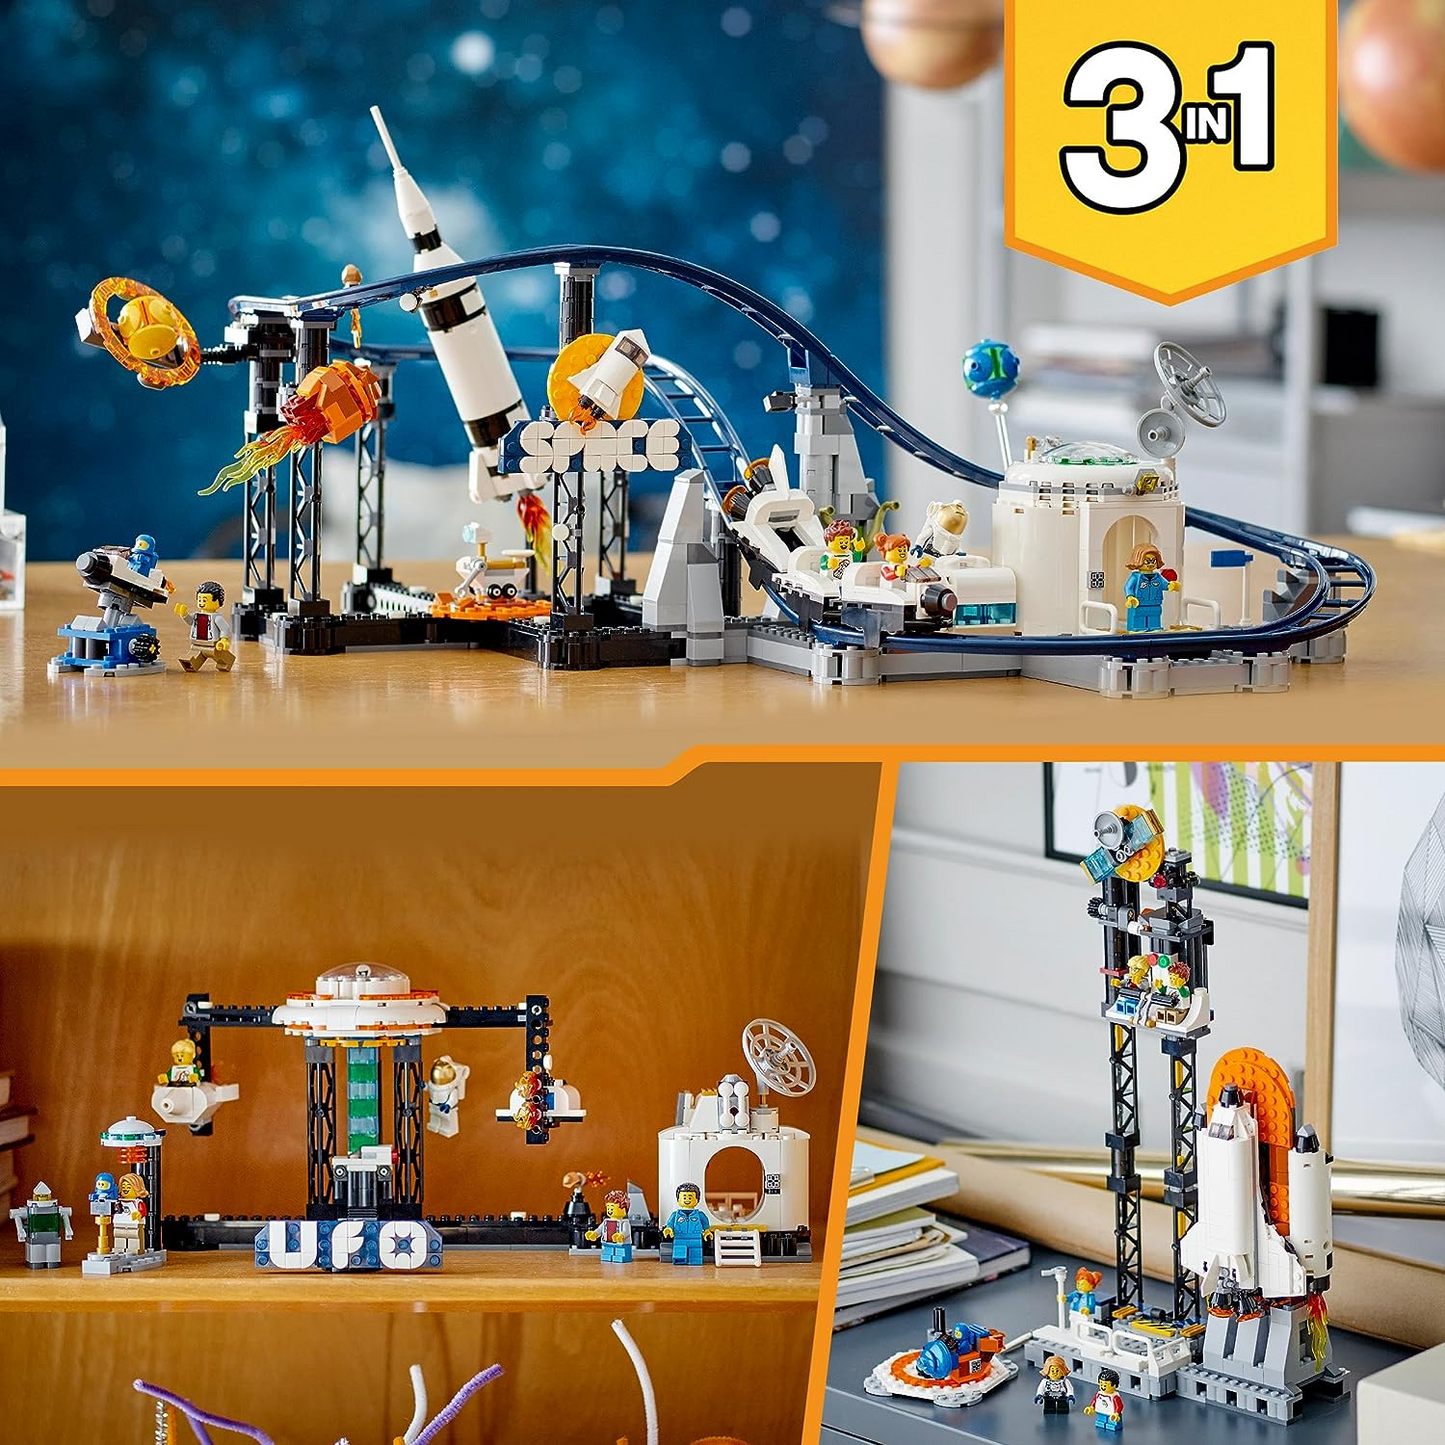 LEGO 31142 Creator 3in1 Space Roller Coaster to Drop Tower ou Merry-Go-Round Set, modelo de parque de diversões, brinquedo de construção com foguete espacial, planetas e tijolos iluminados